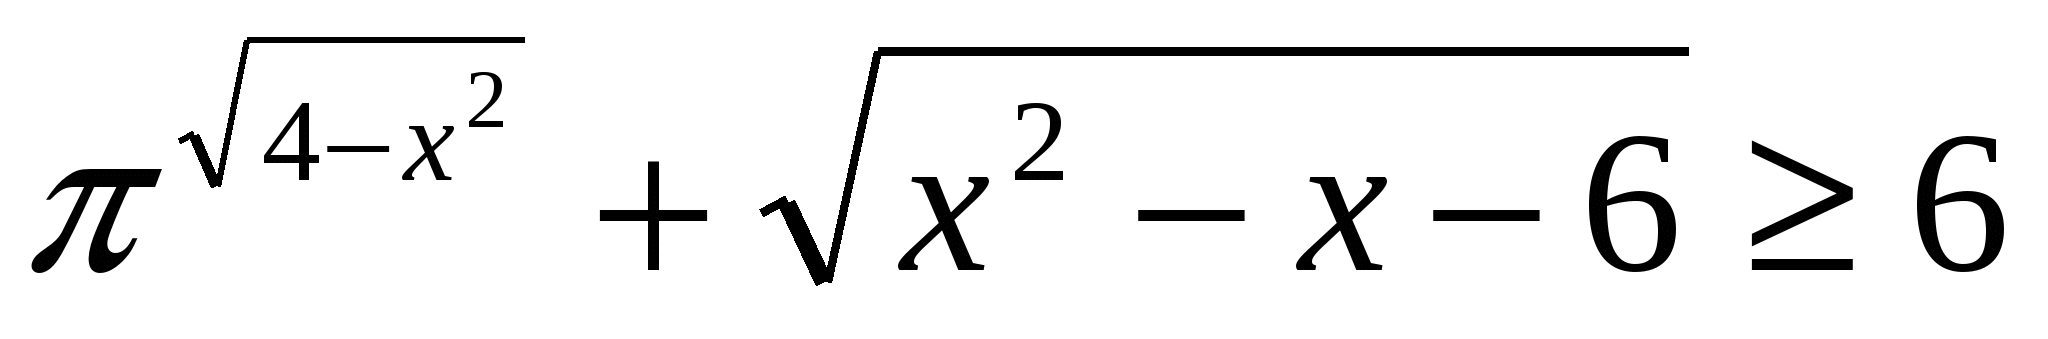 Программа элективных курсов по математике Нестандартные приемы решения нестандартных уравнений и неравенств